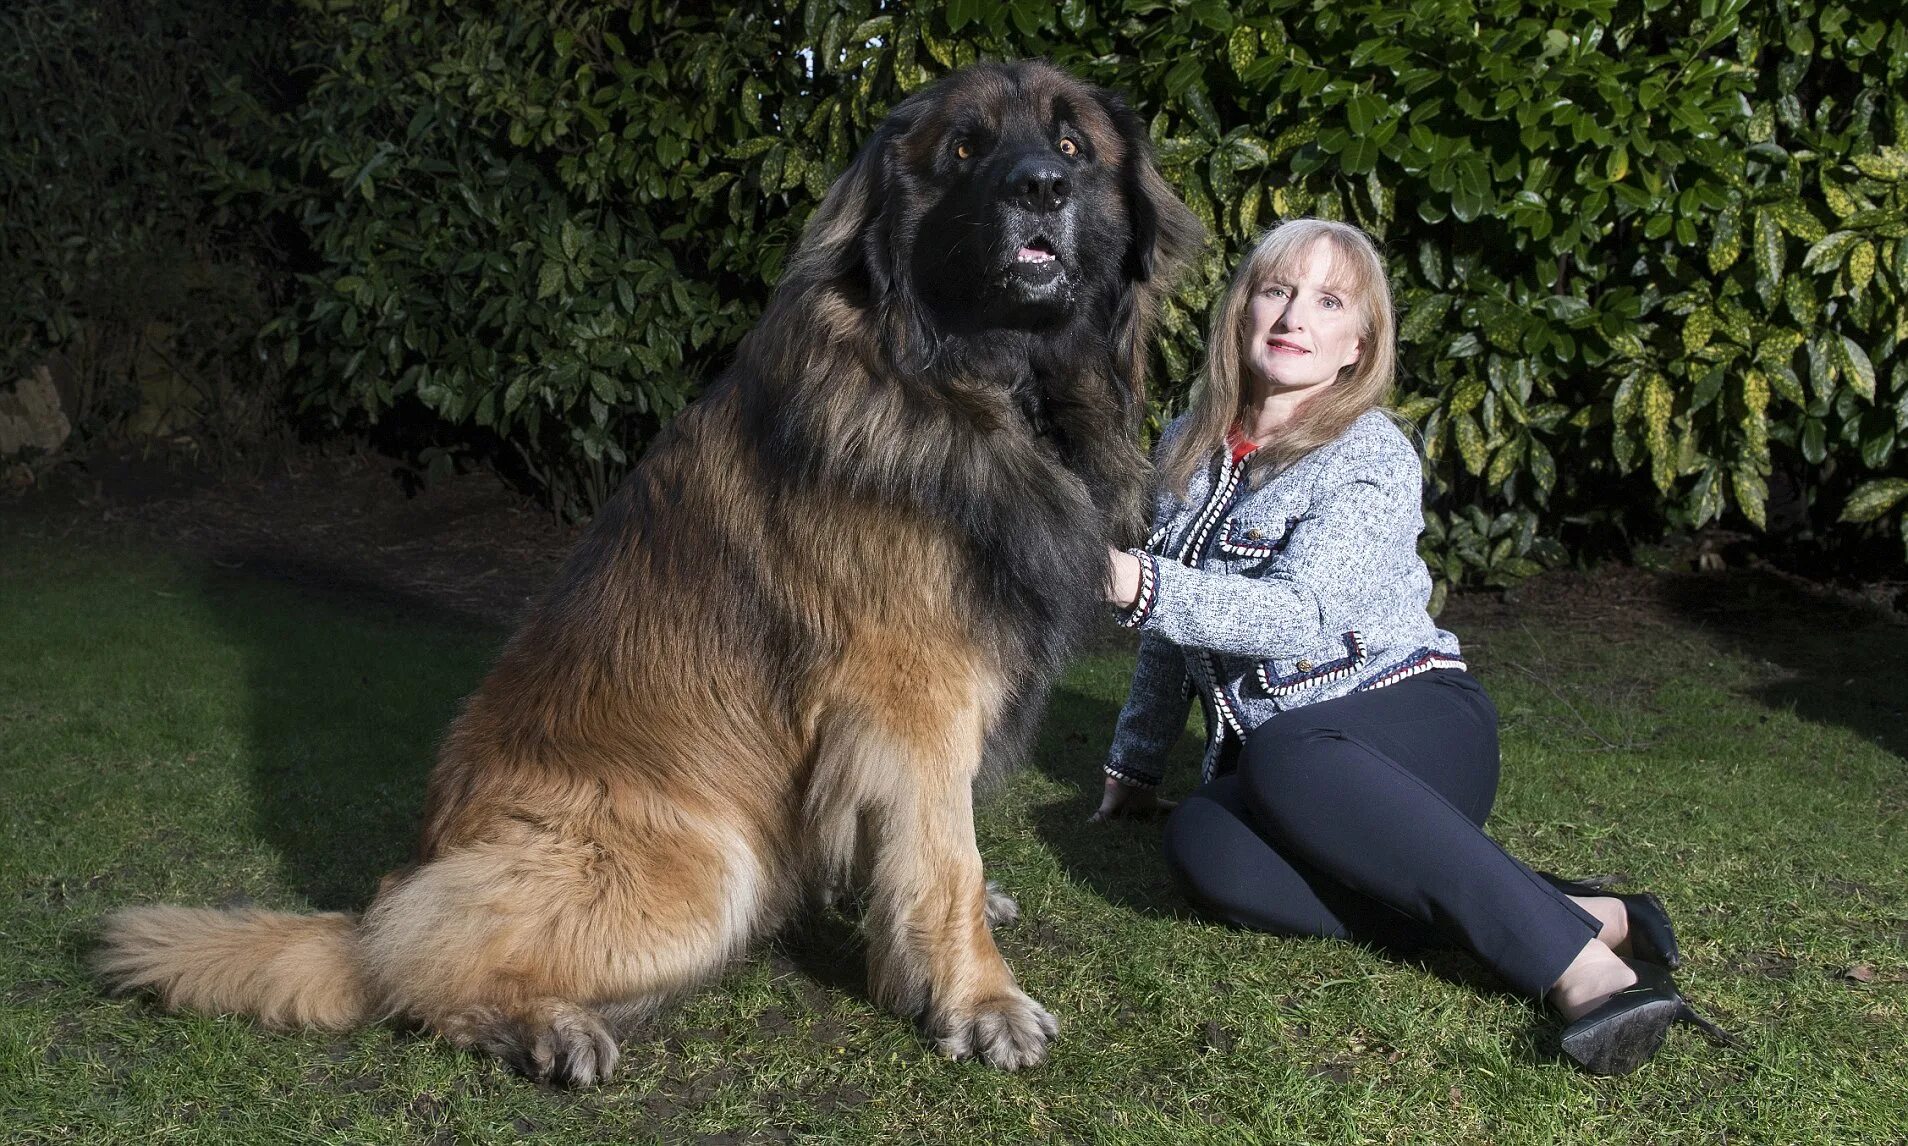 Какие крупные собаки. Леонбергер с человеком. Лысый ньюфаундленд Леонбергер. Леонбергер гигантская. Порода собак Леонбергер с человеком.